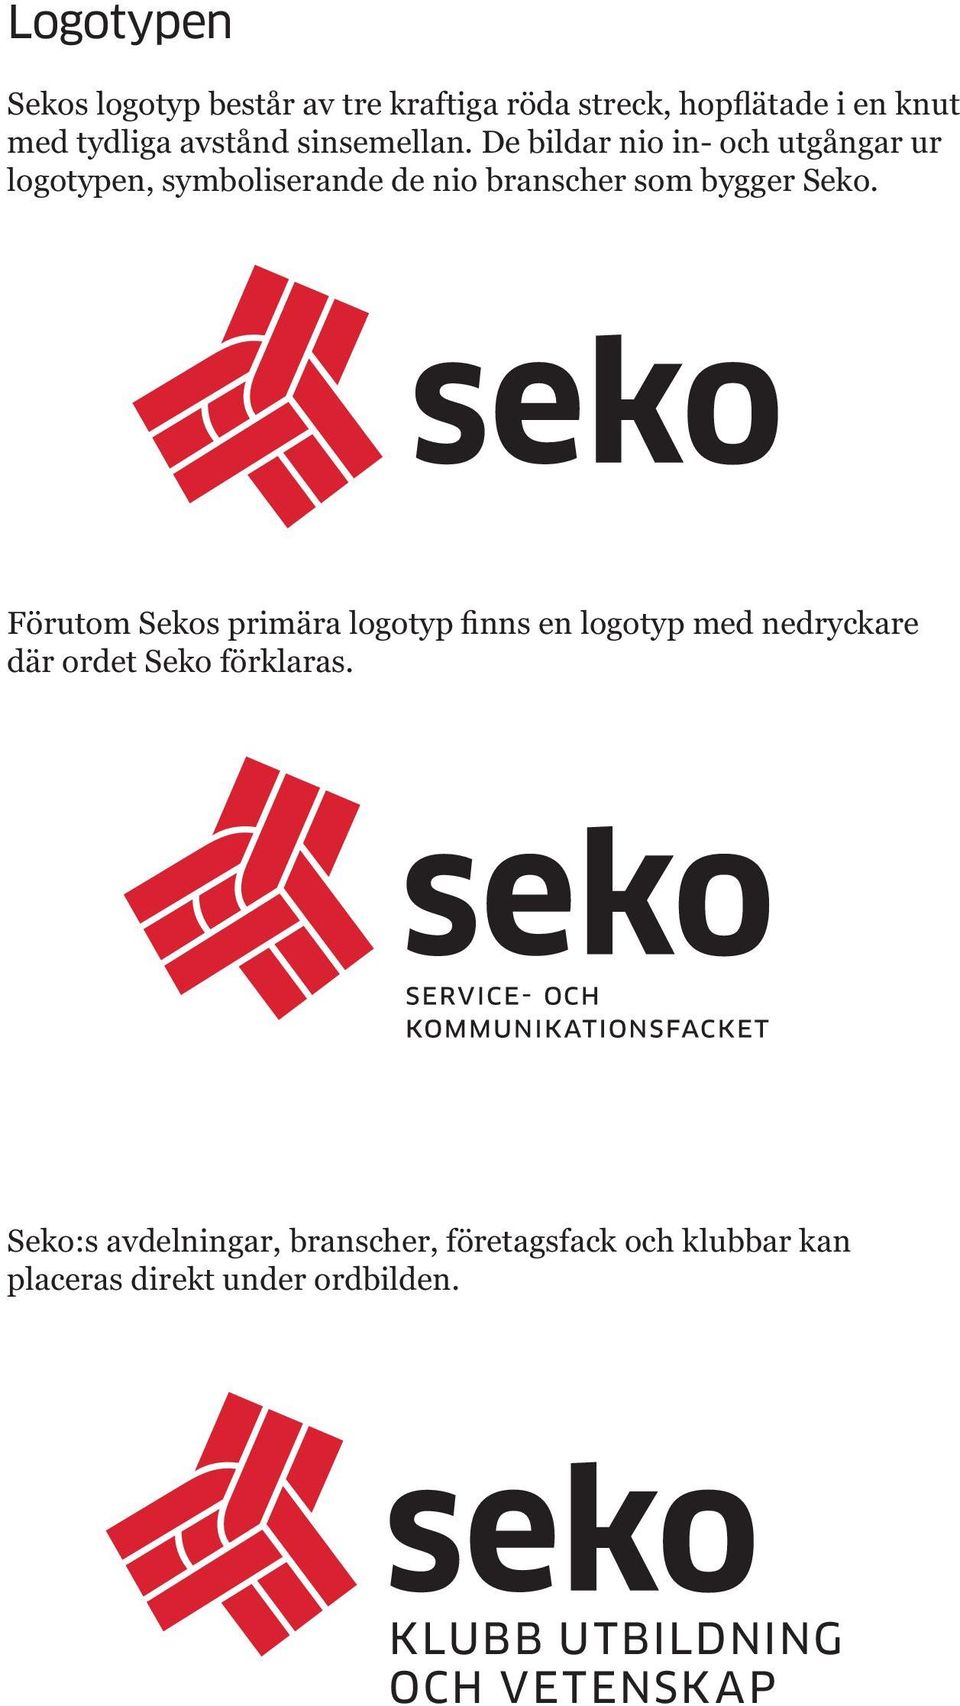 De bildar nio in- och utgångar ur logotypen, symboliserande de nio branscher som bygger Seko.